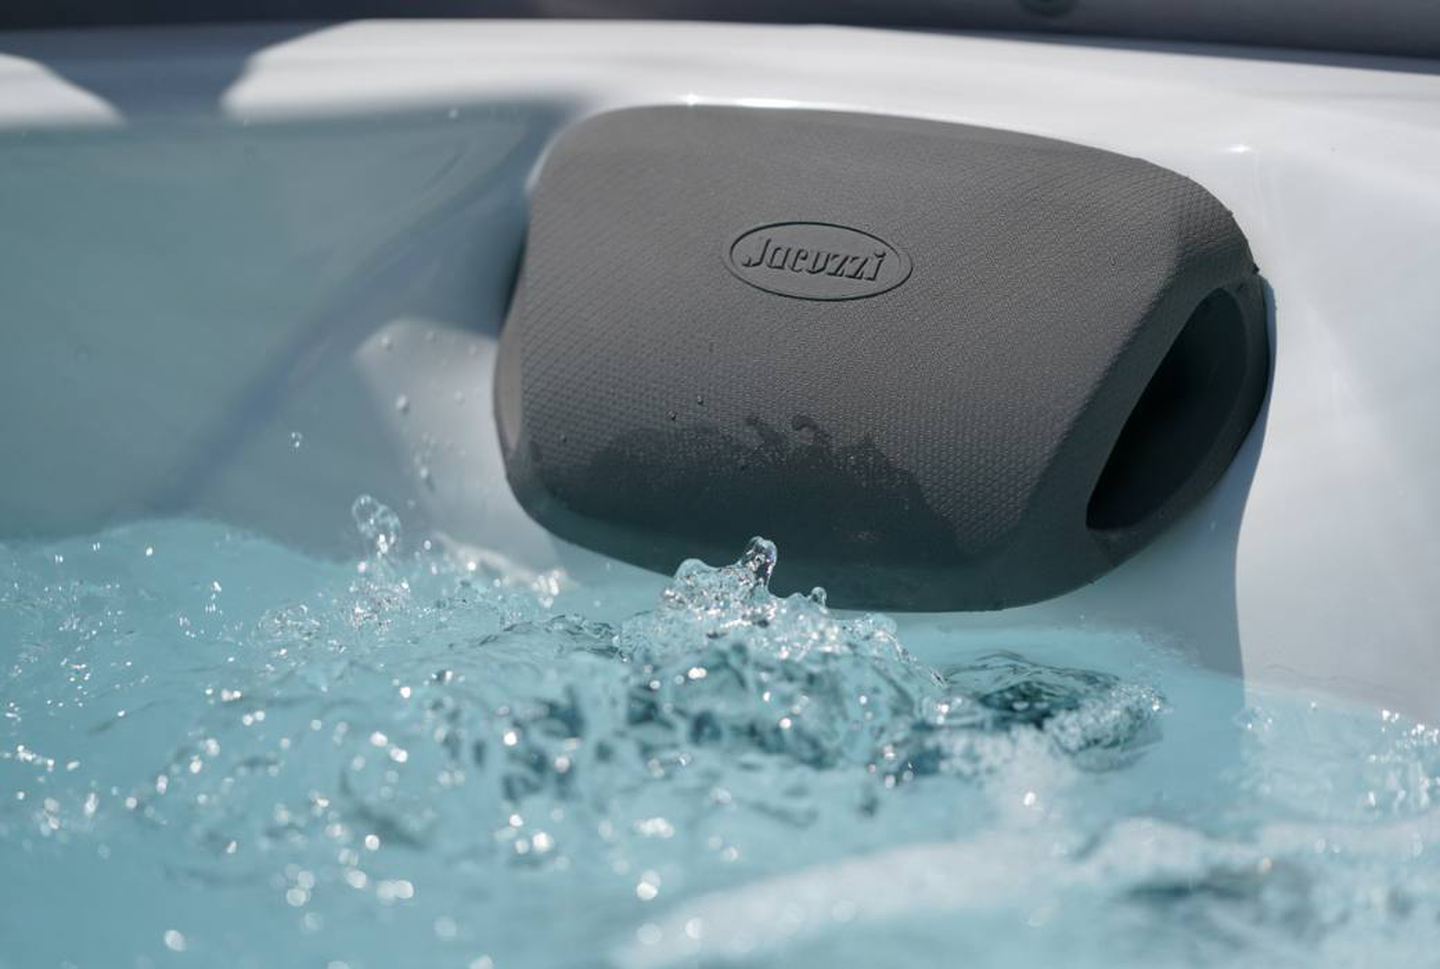 Jacuzzi® hot tub : durée idéale de l'hydromassage et température optimale